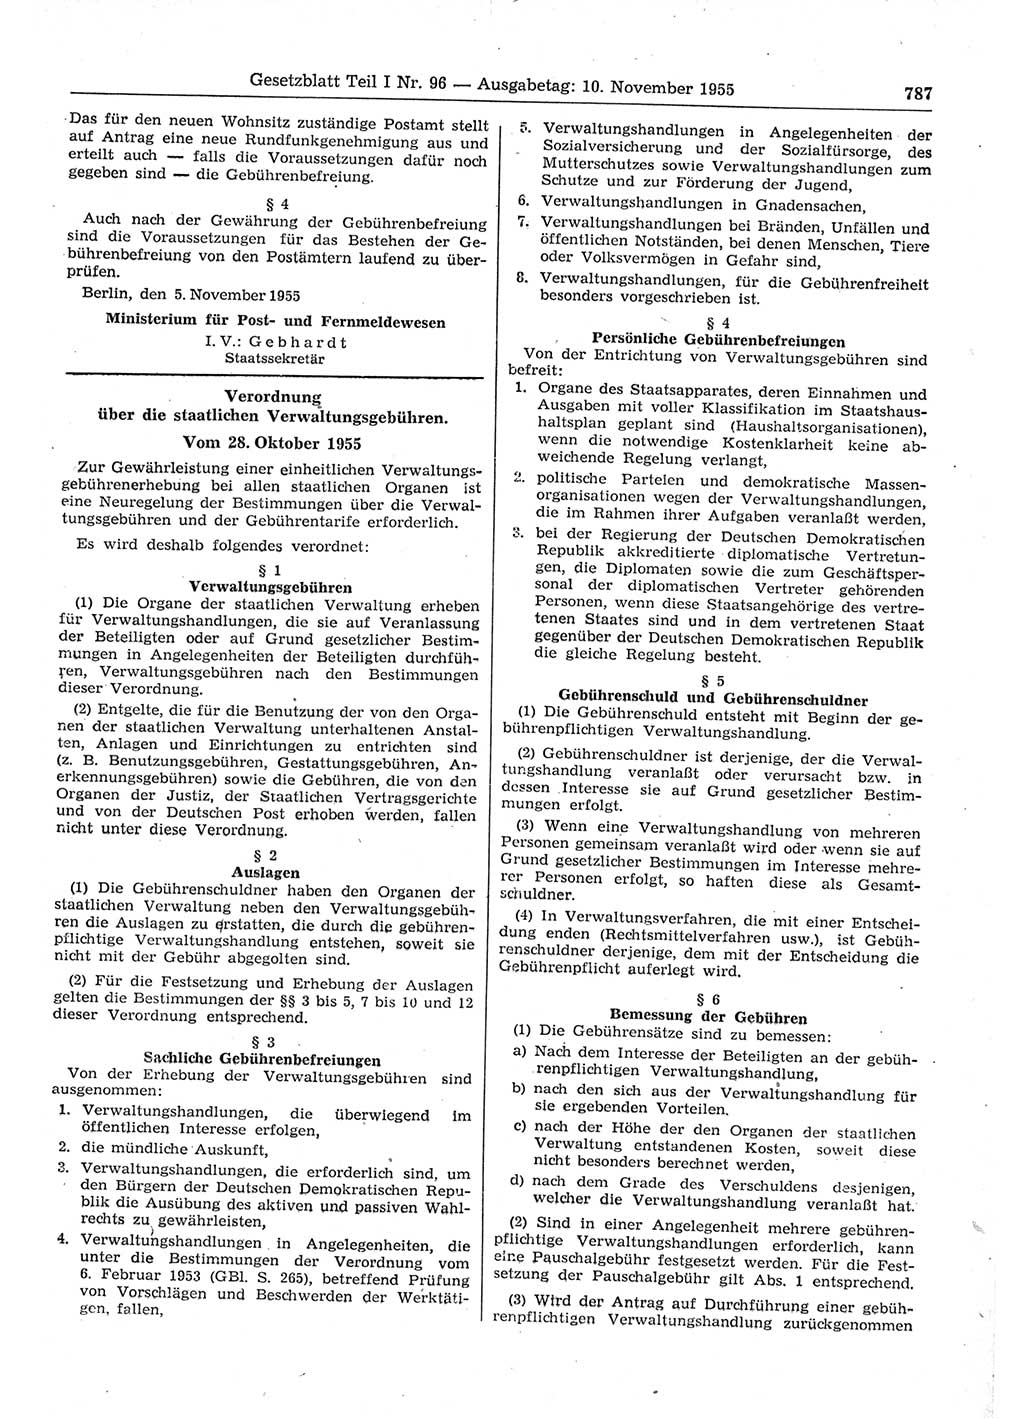 Gesetzblatt (GBl.) der Deutschen Demokratischen Republik (DDR) Teil Ⅰ 1955, Seite 787 (GBl. DDR Ⅰ 1955, S. 787)